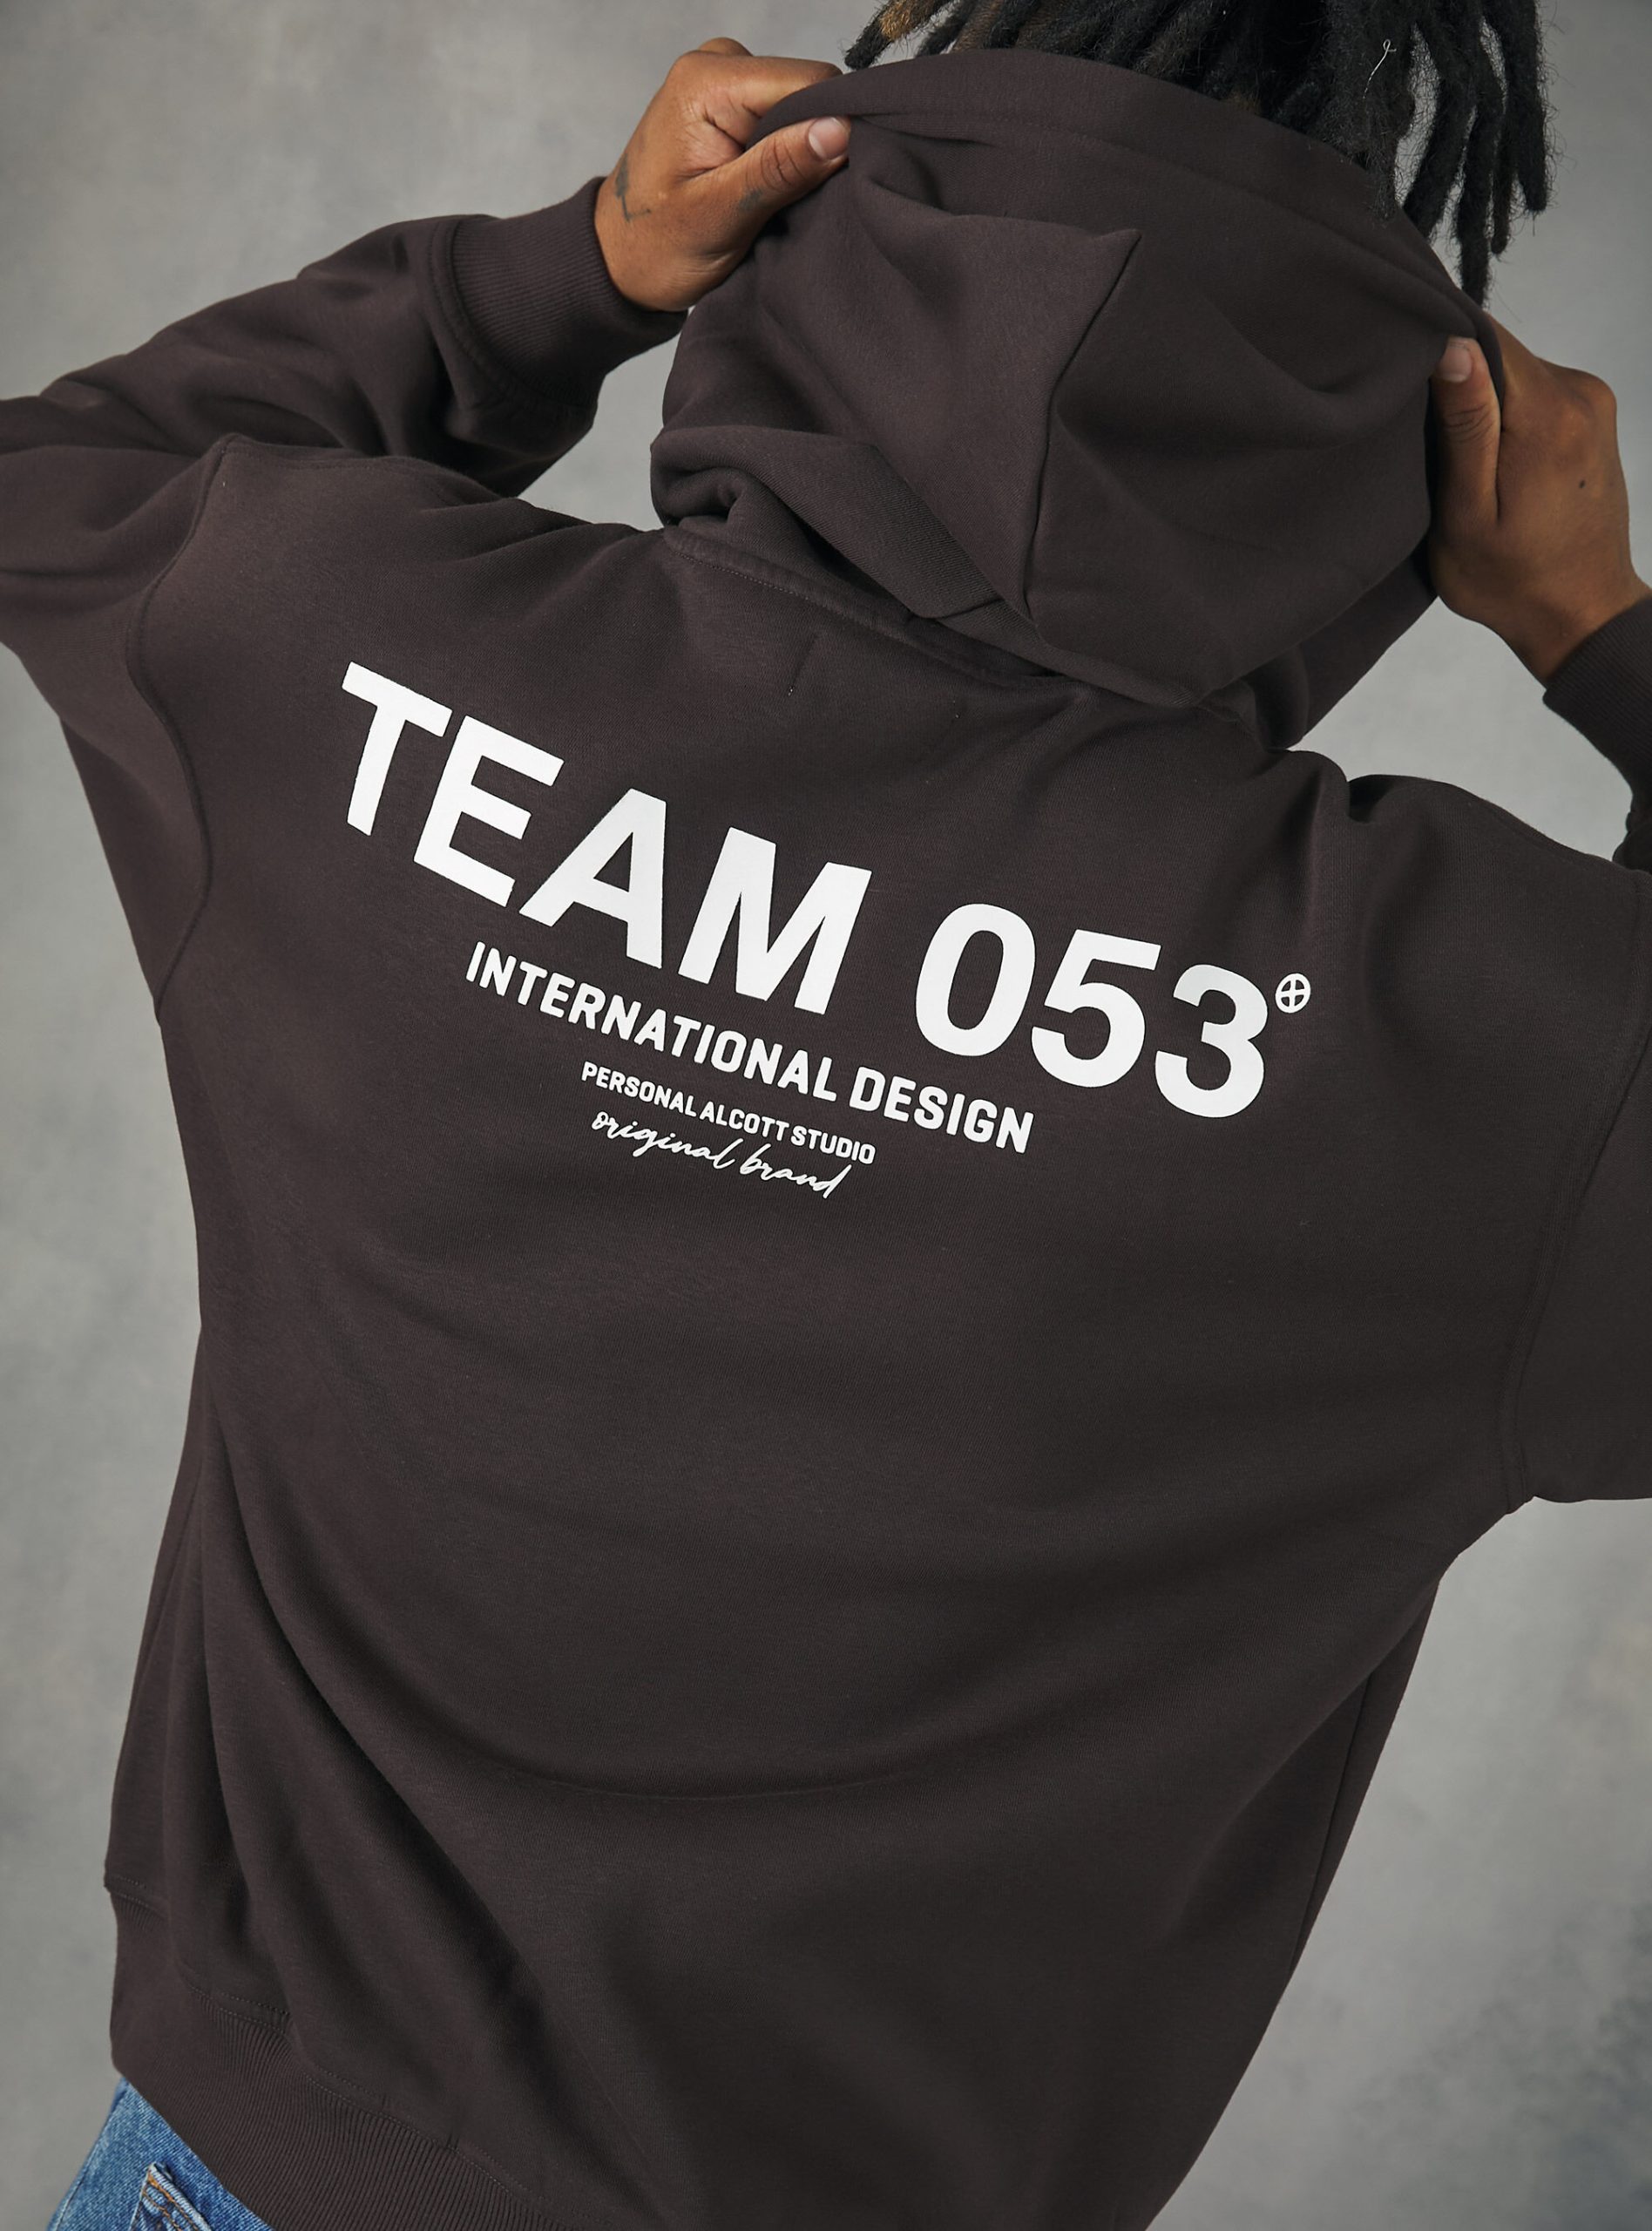 Männer Sicherheit Sweatshirts Br1 Brown Dark Alcott Sweatshirt With Team 053 Print – 2